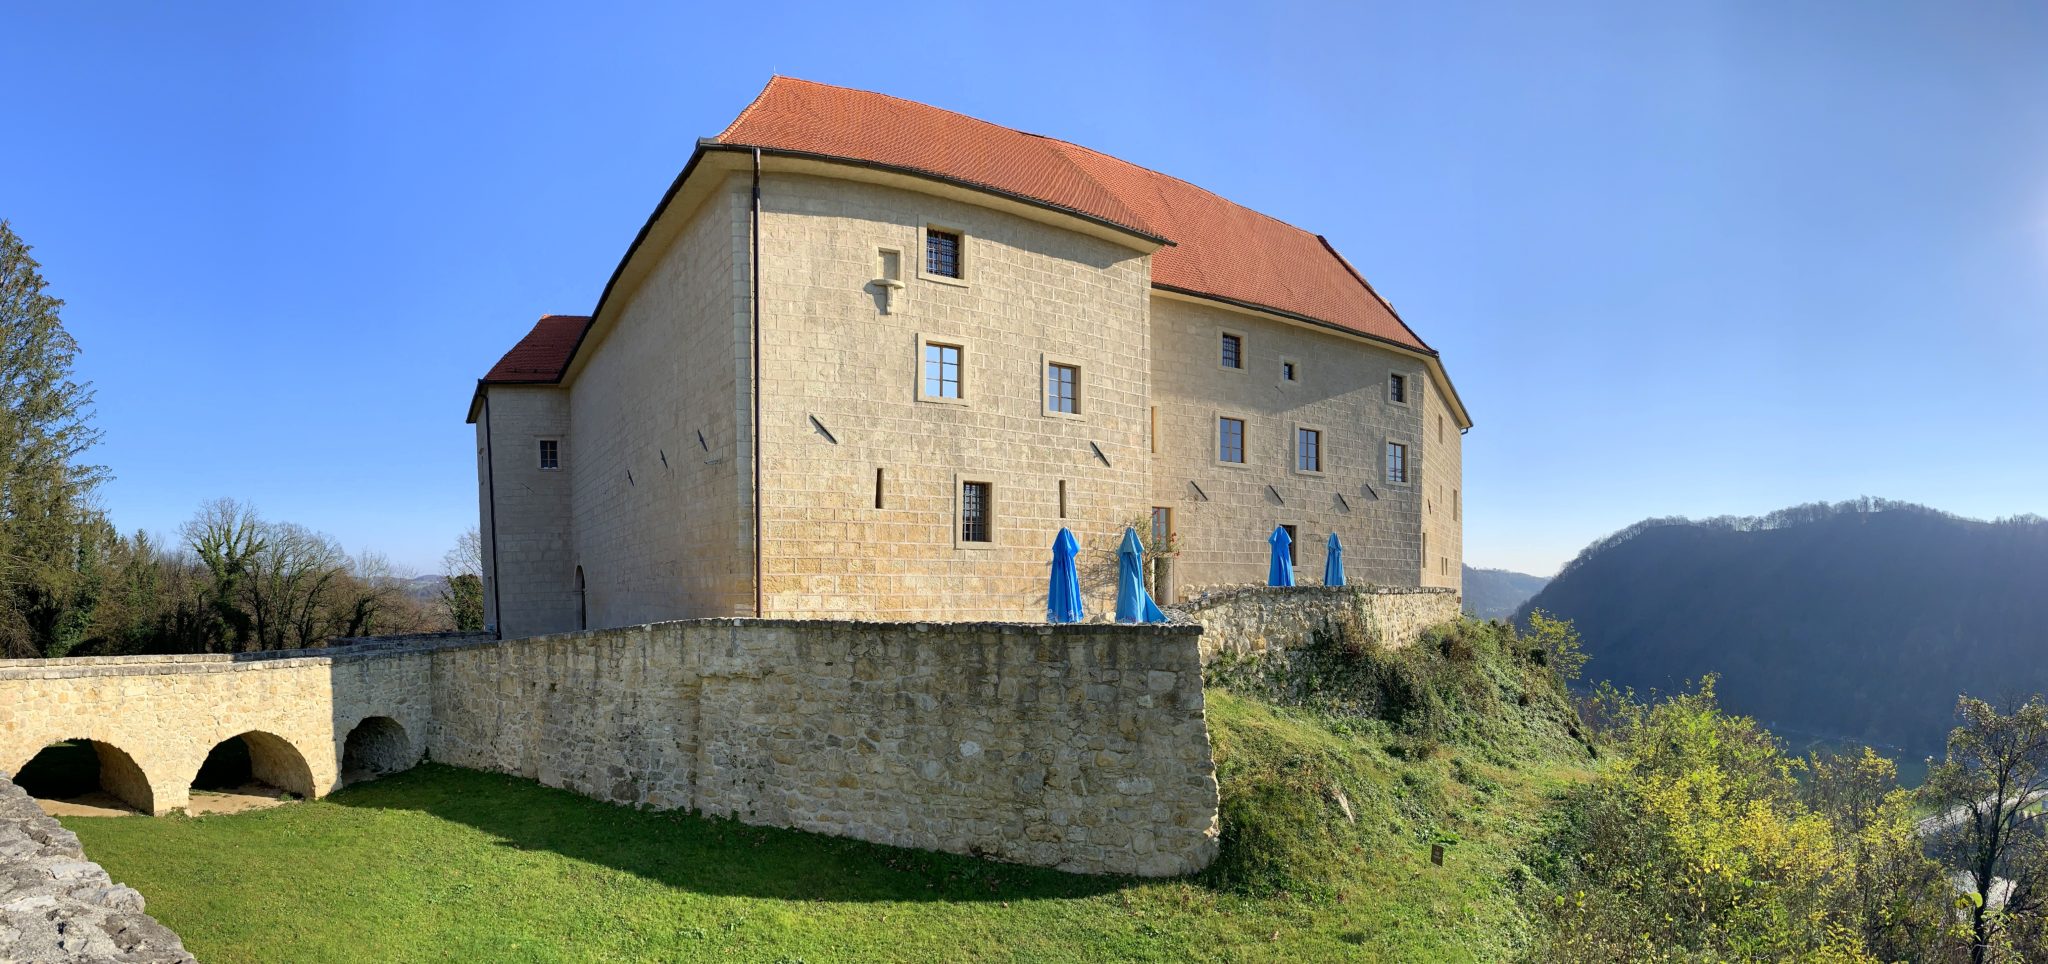 Rajhenburg Castle, Brestanica, Krško, Slovenia